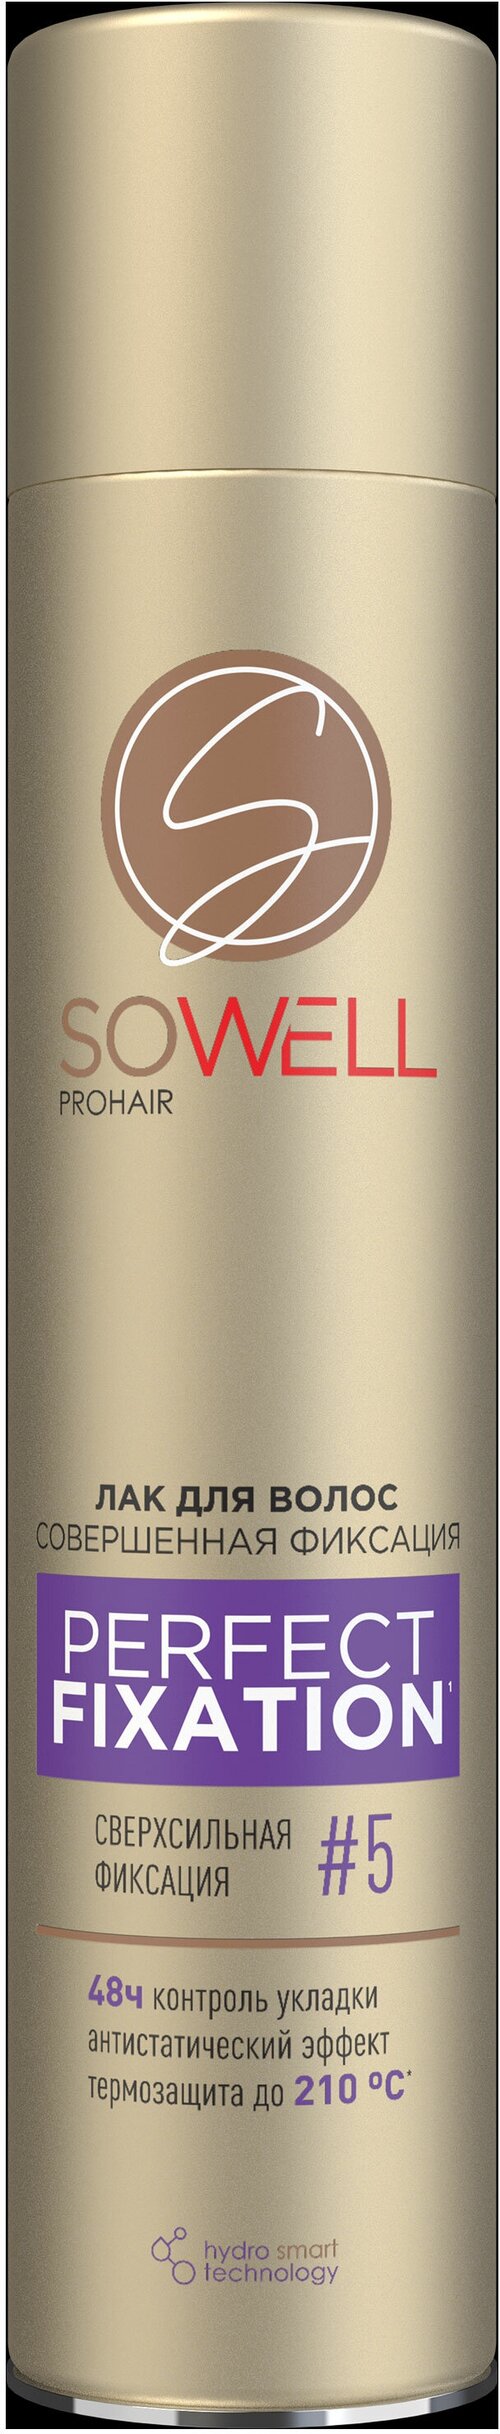 Лак для волос SoWell Perfect Fixation сверхсильной фиксации, 300 мл